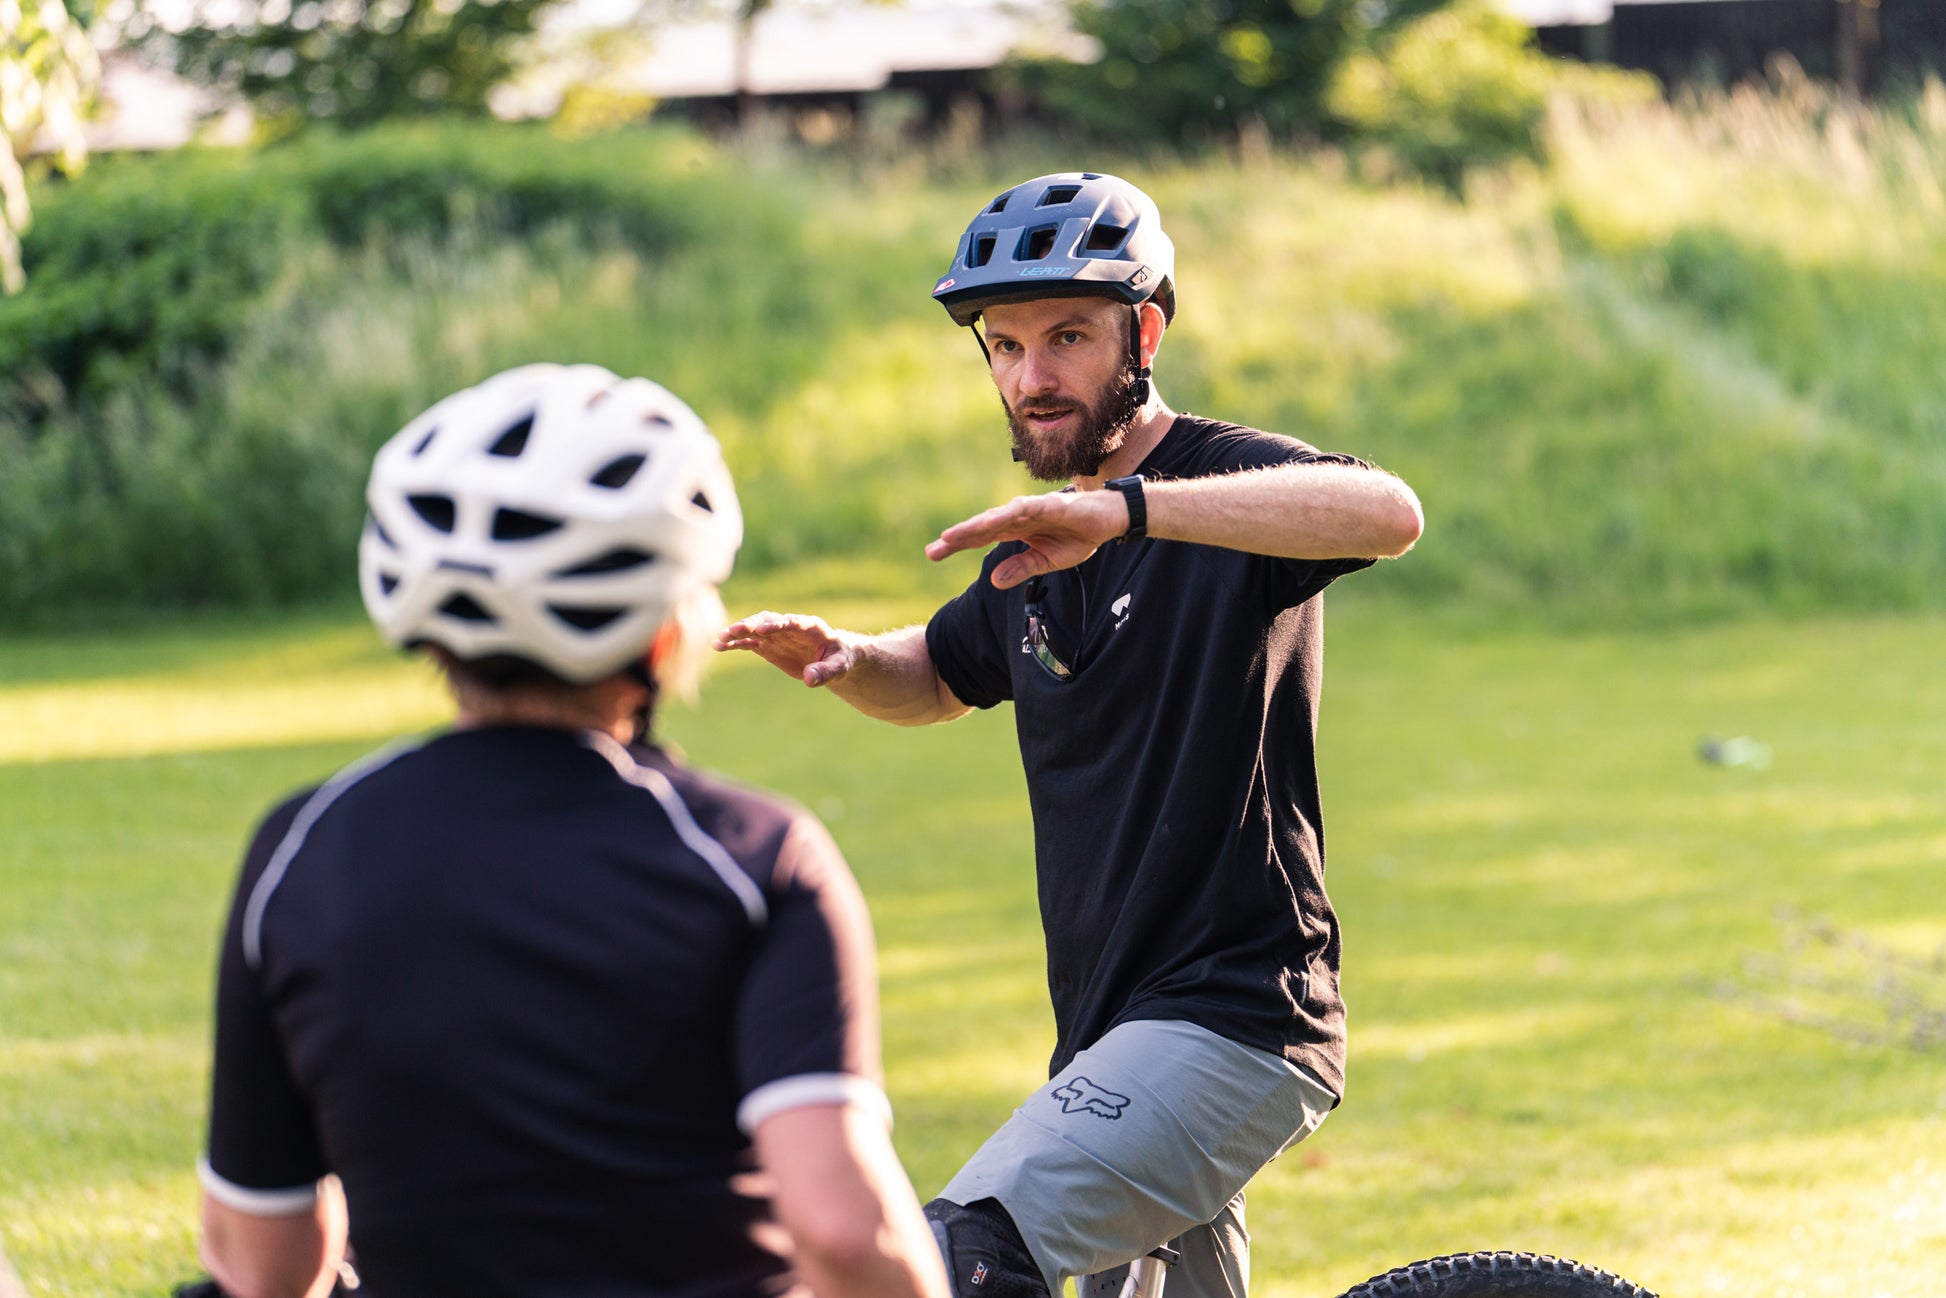 Bikepark-Training in Leogang mit einem Guide der Bikeschule Salzburg